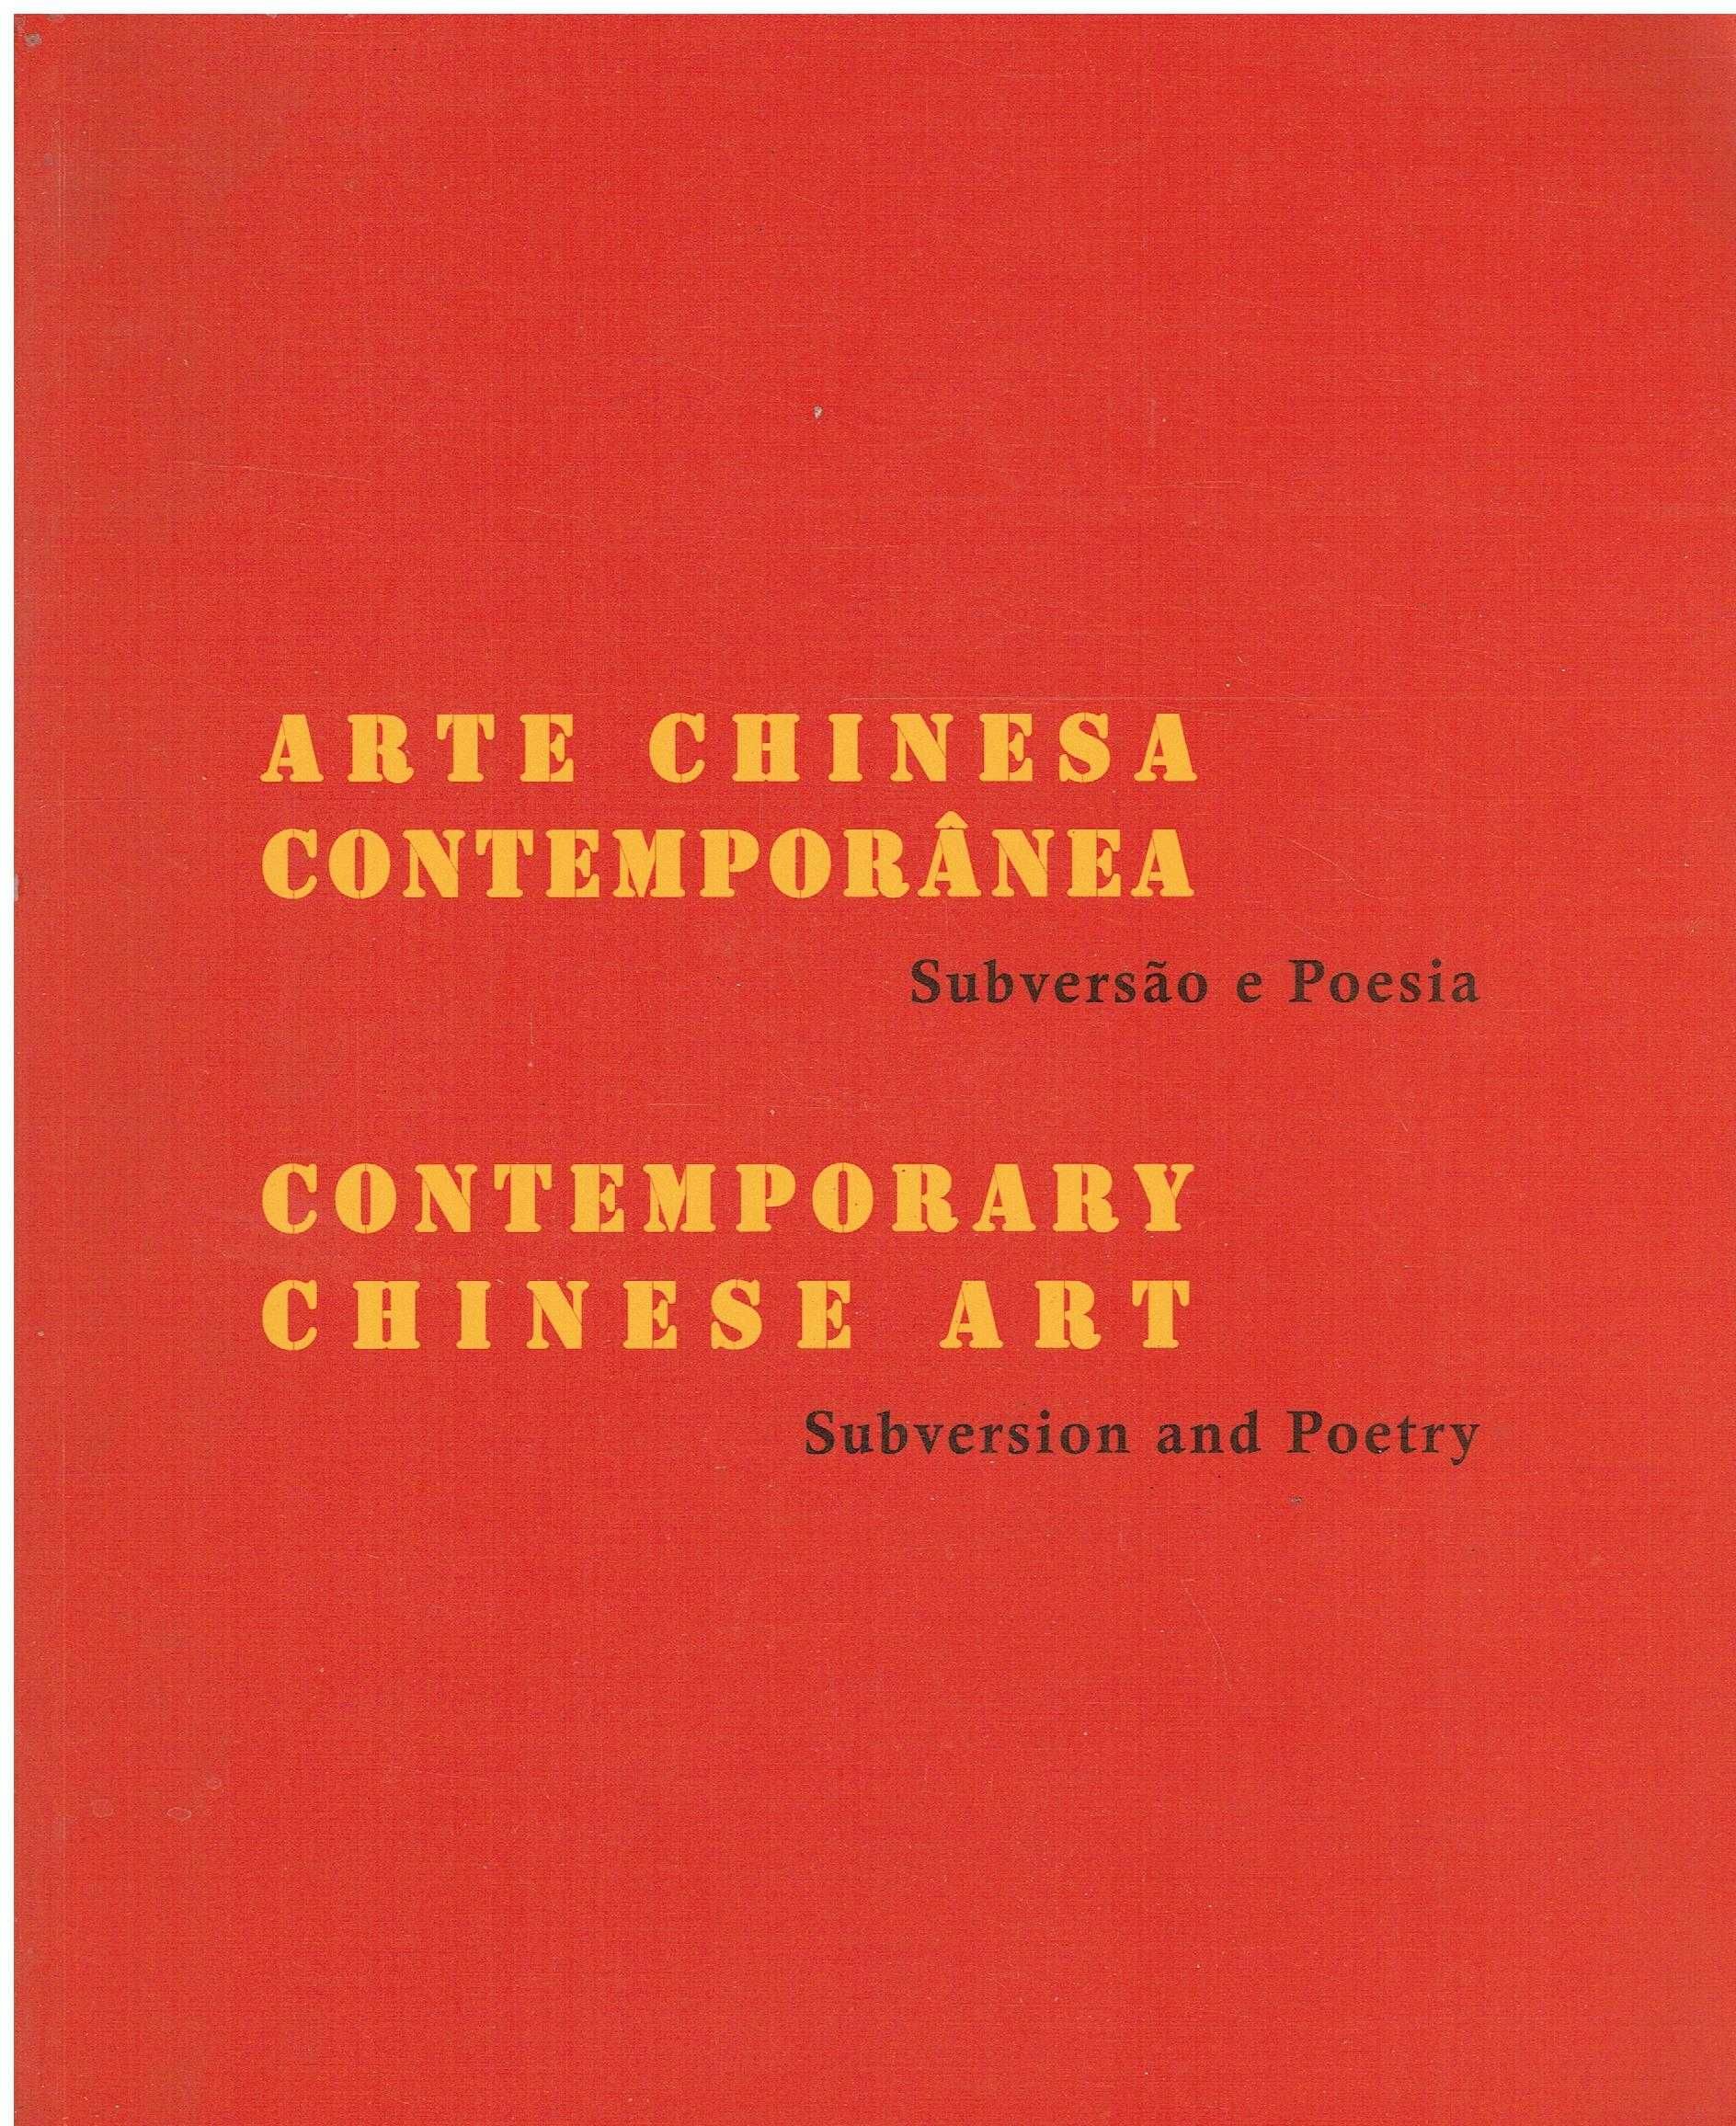 11834

Arte Chinesa Contemporânea
Subversão e Poesia